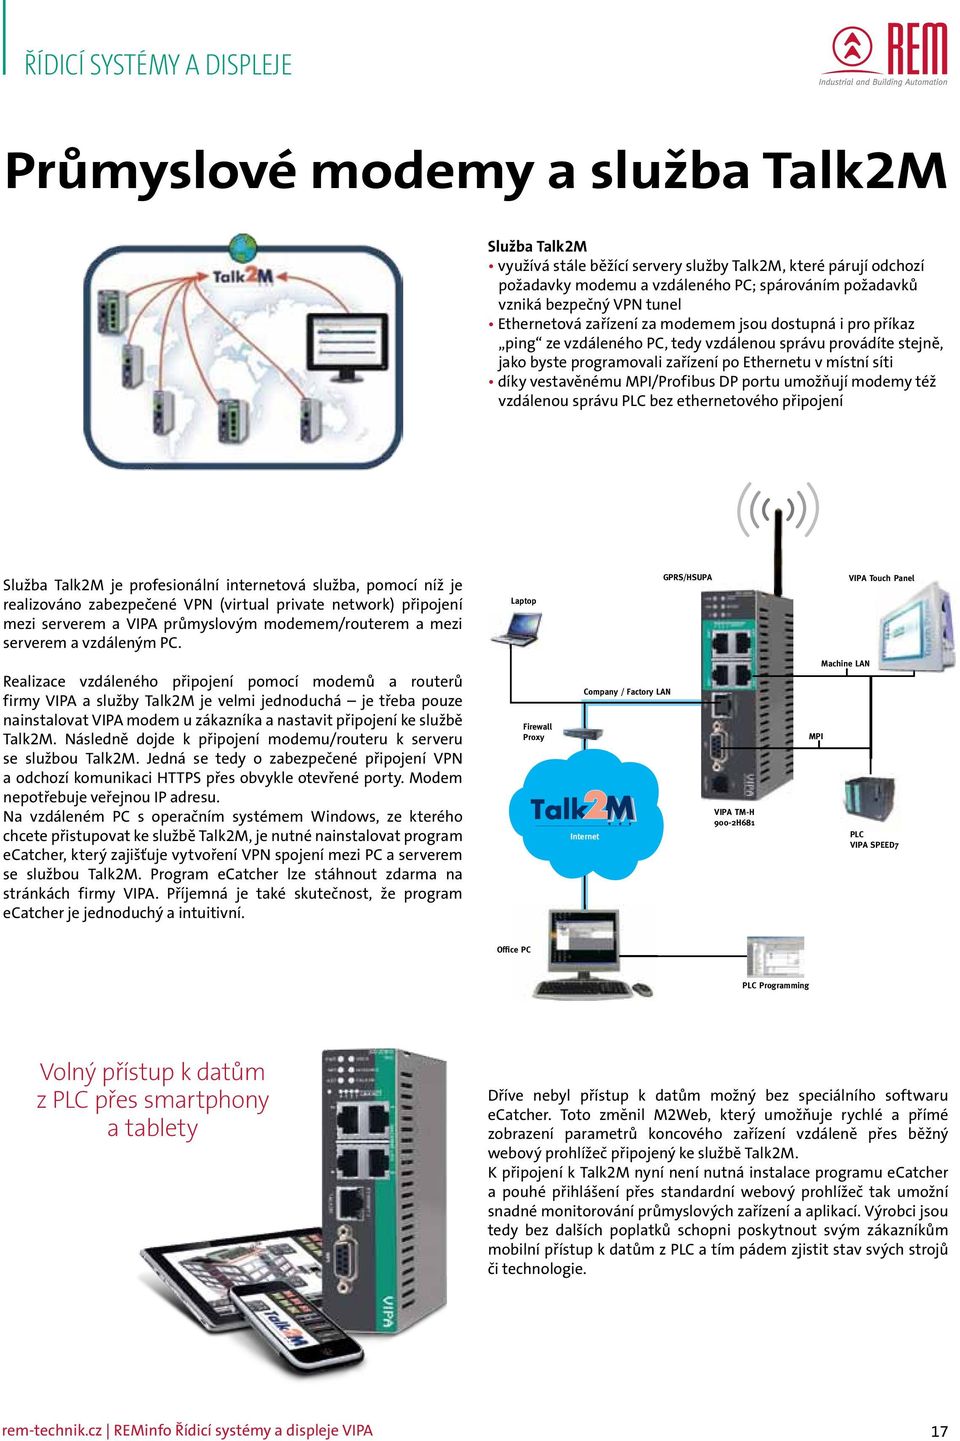 MPI/Profibus DP portu umožňují modemy též vzdálenou správu PLC bez ethernetového připojení Služba Talk2M je profesionální internetová služba, pomocí níž je realizováno zabezpečené VPN (virtual